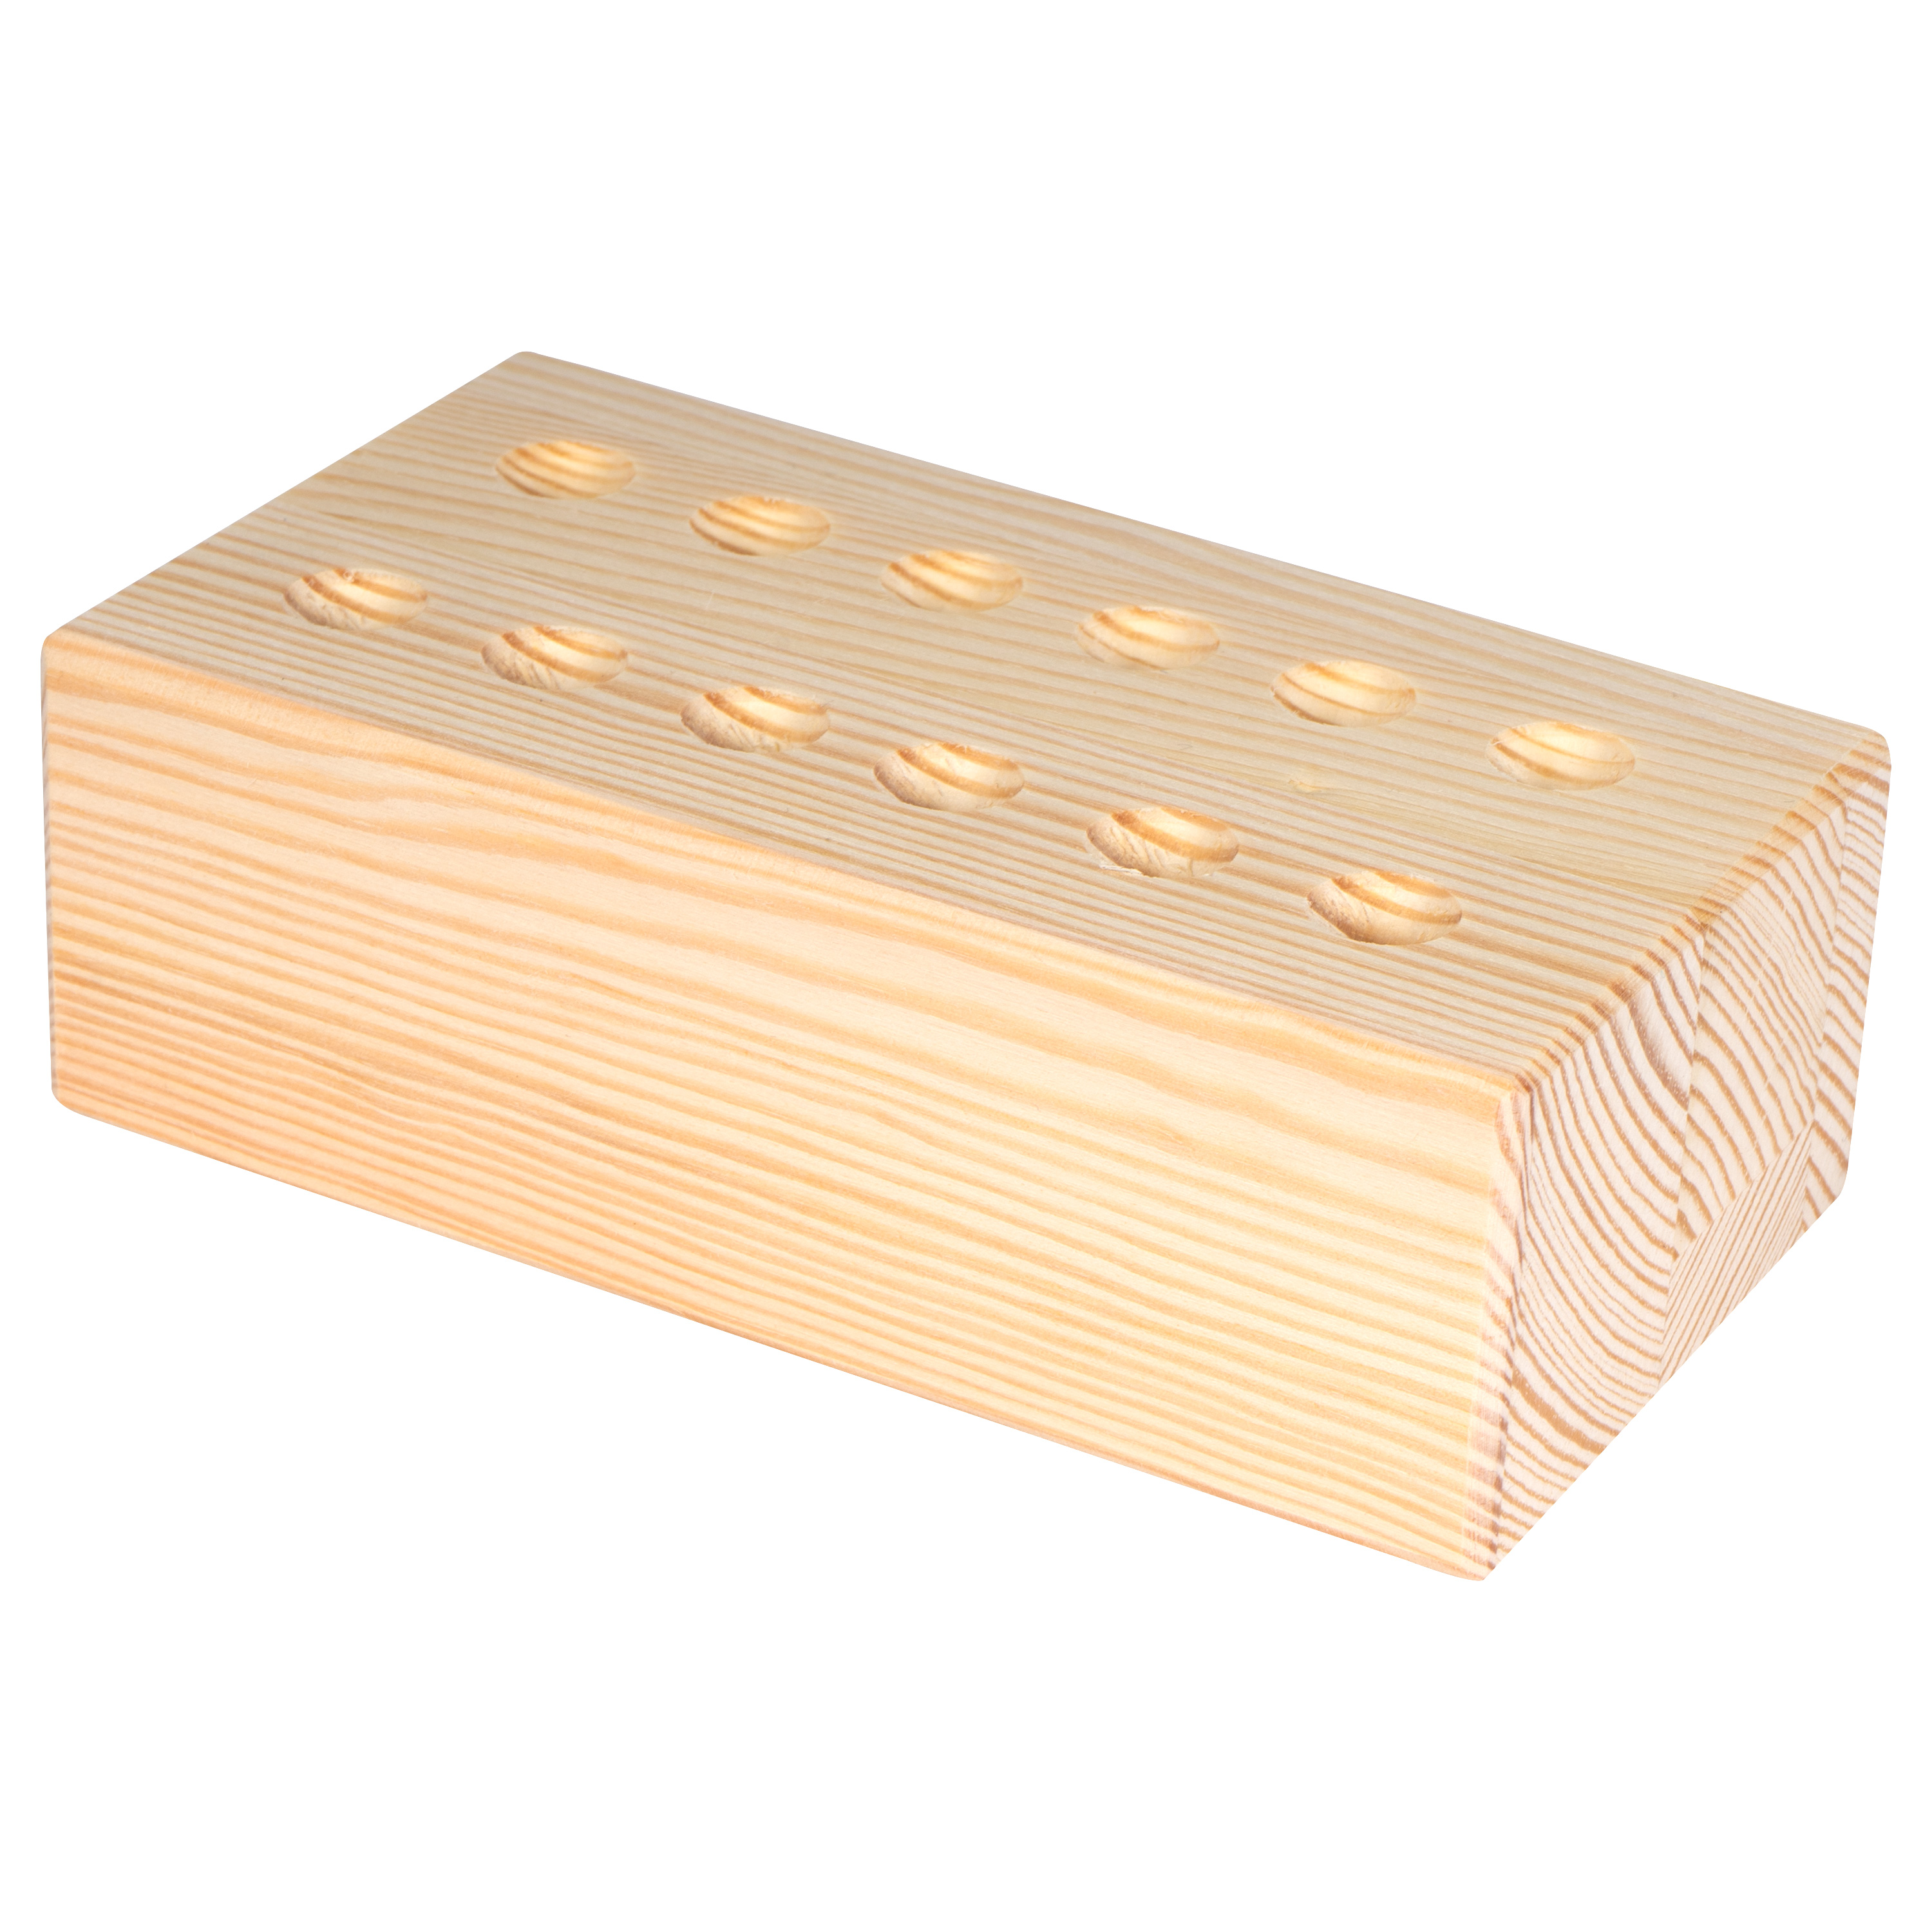 Prickelblock aus Holz für bis zu 12 Prickelnadeln